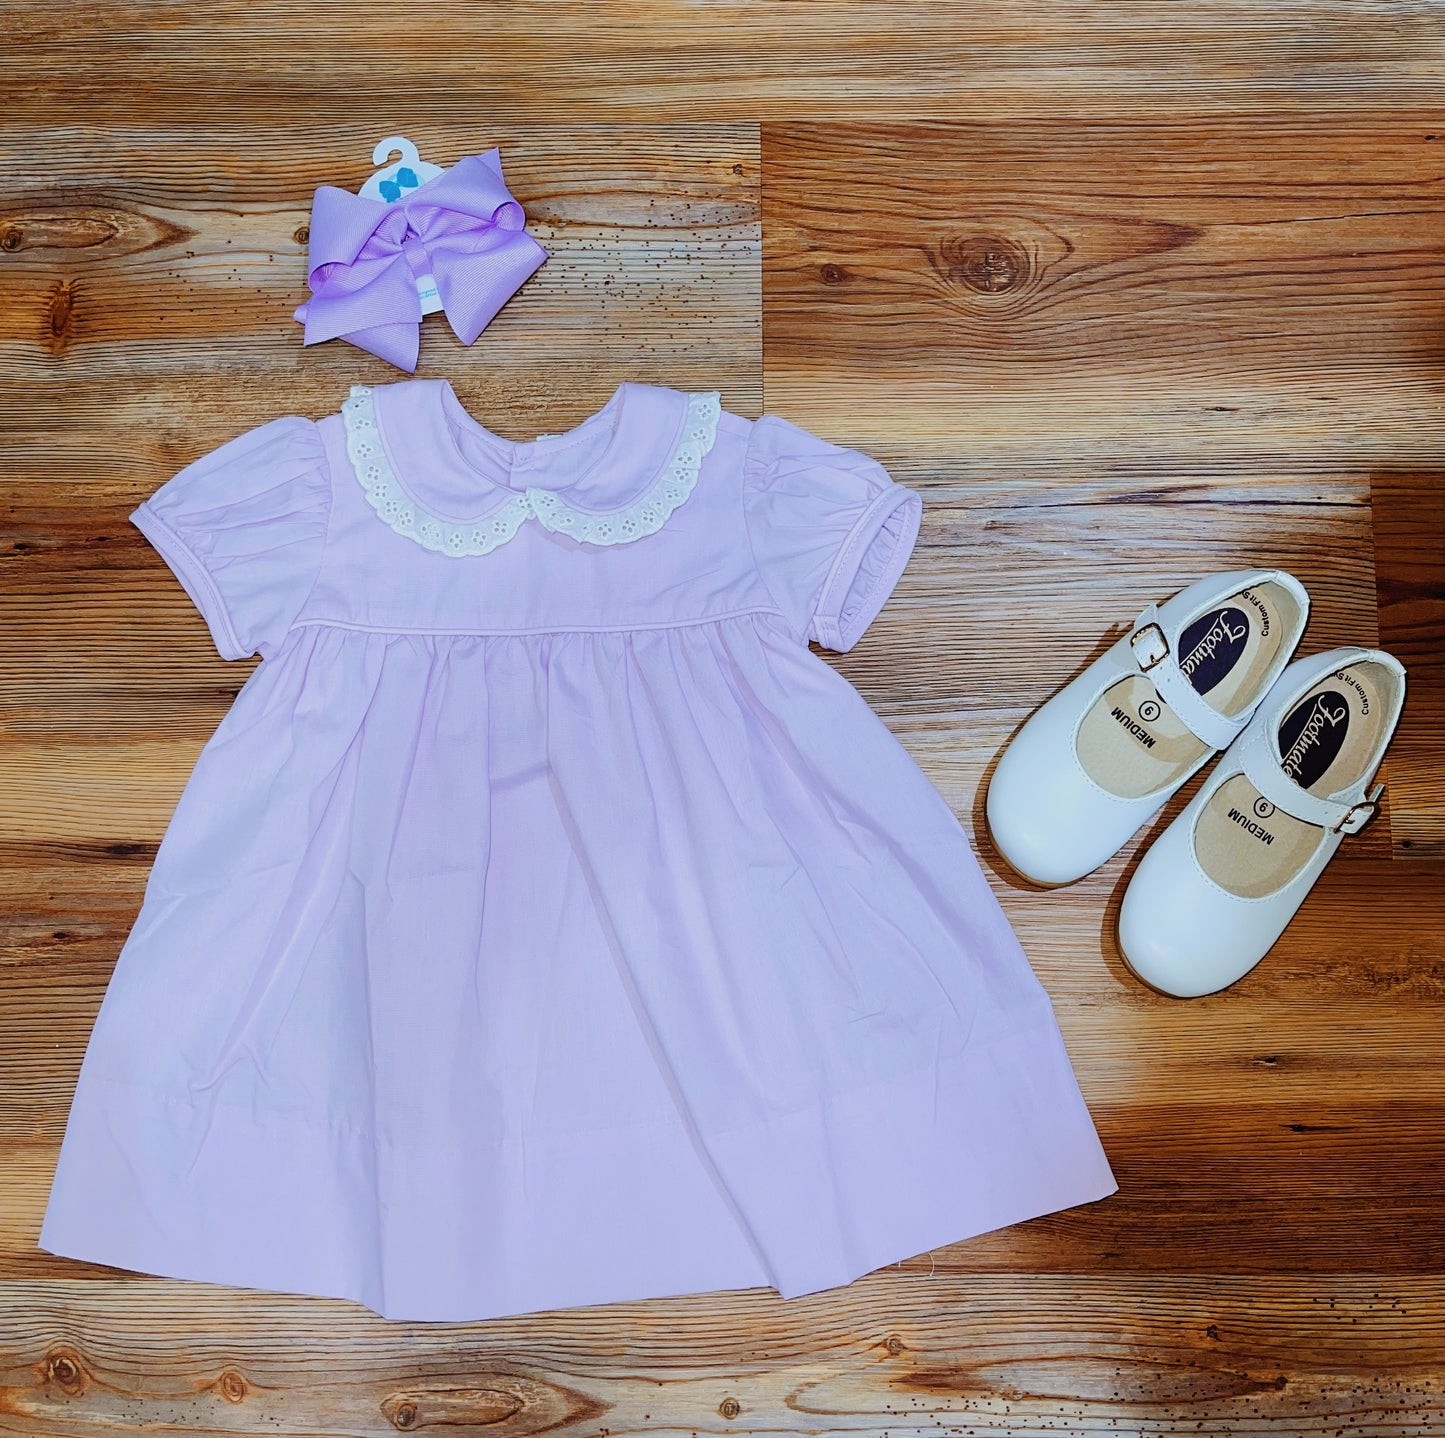 Lilac Sawyer Dress